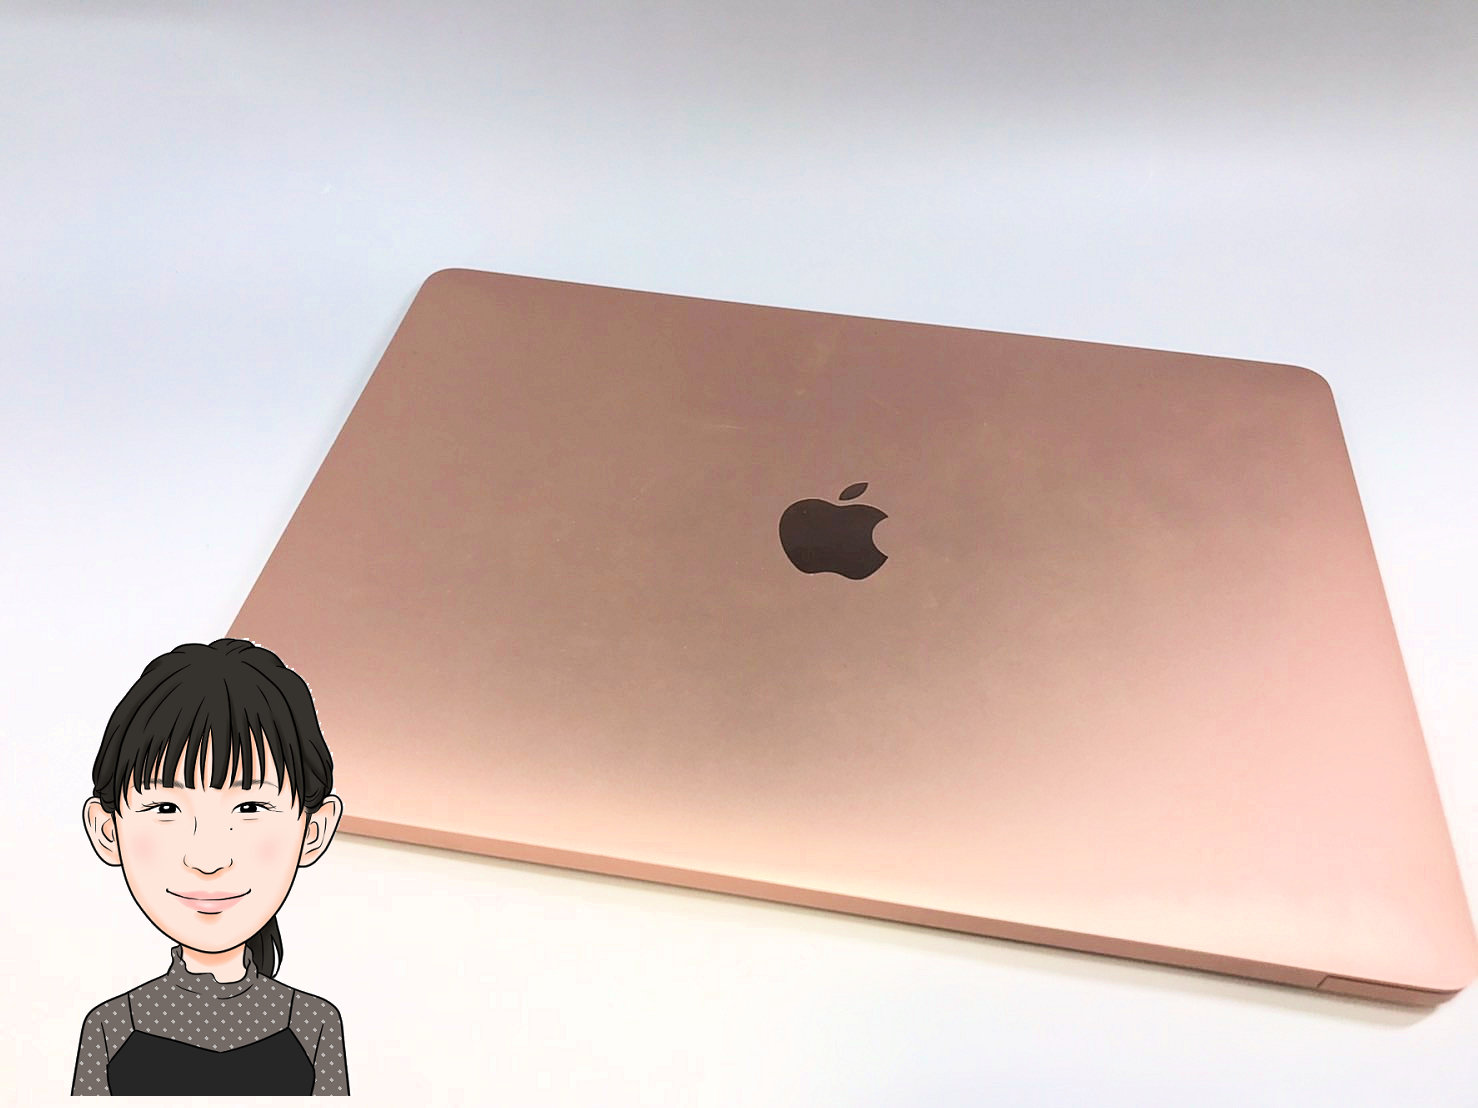 MacBook Air 【マックブックエアー】 13インチ 256GB 2020 A2179 画像1